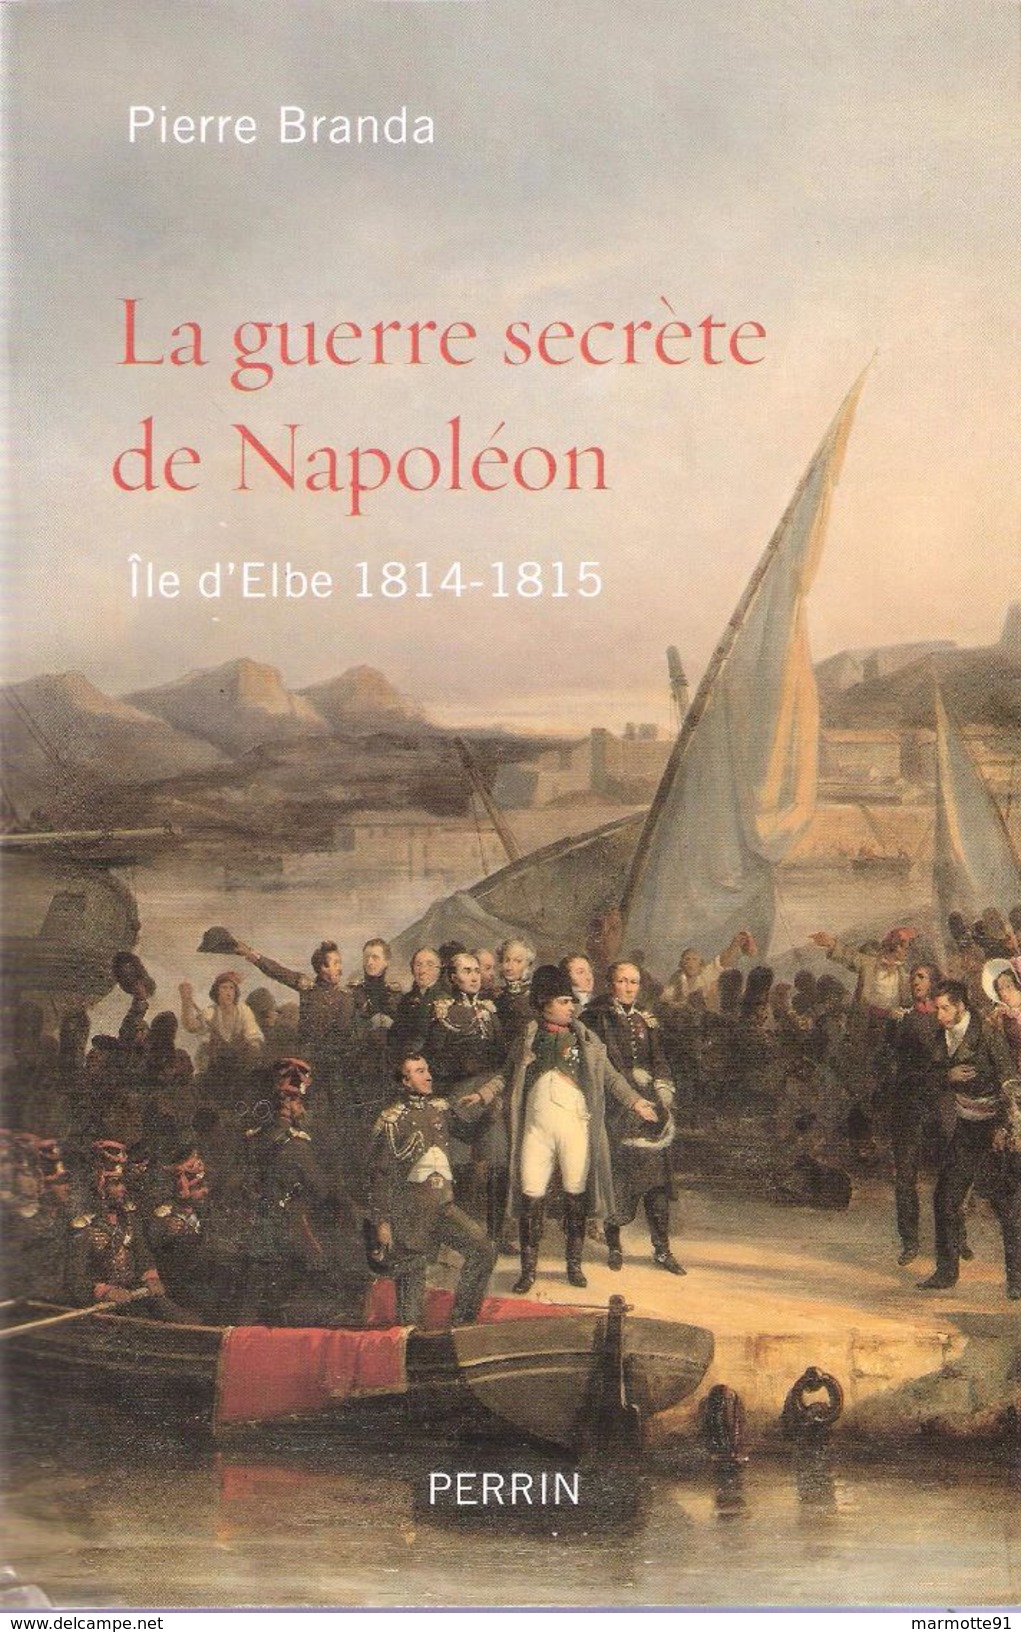 GUERRE SECRETE DE NAPOLEON ILE D ELBE 1814 1815 EMPEREUR BONAPARTE EMPIRE - Geschichte